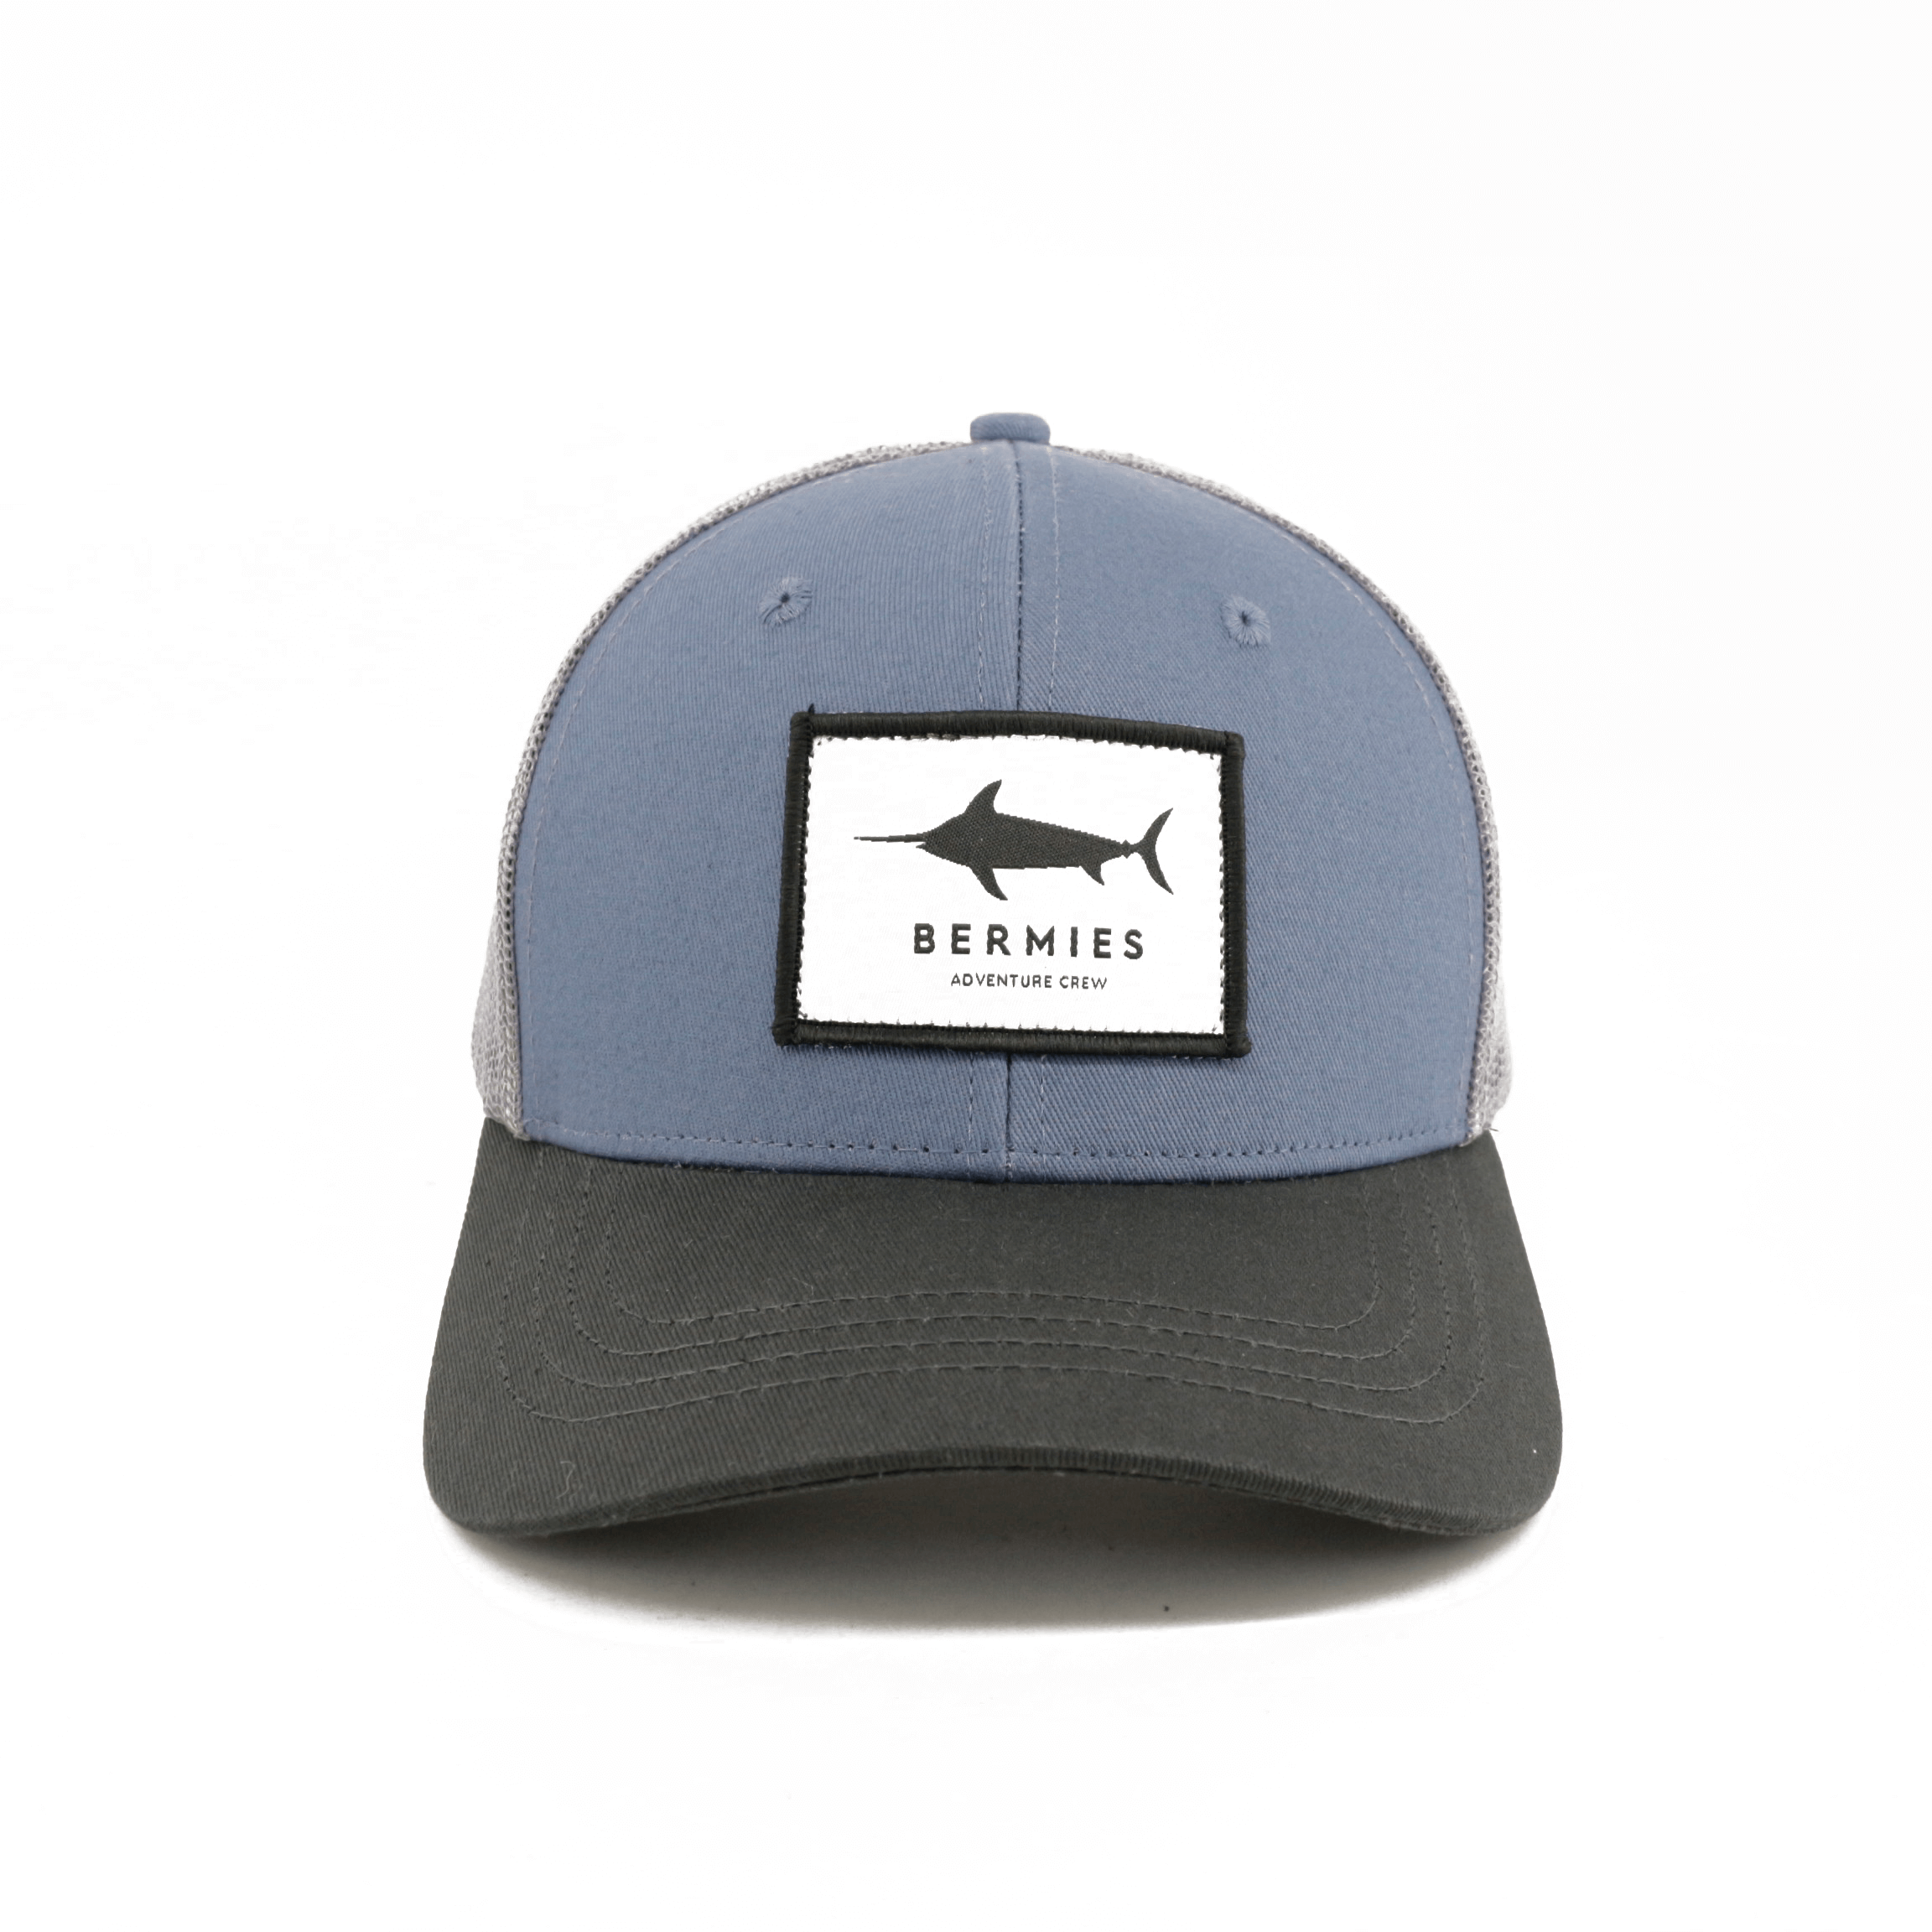 Marlin by Bermies, Unisex Trucker Hat